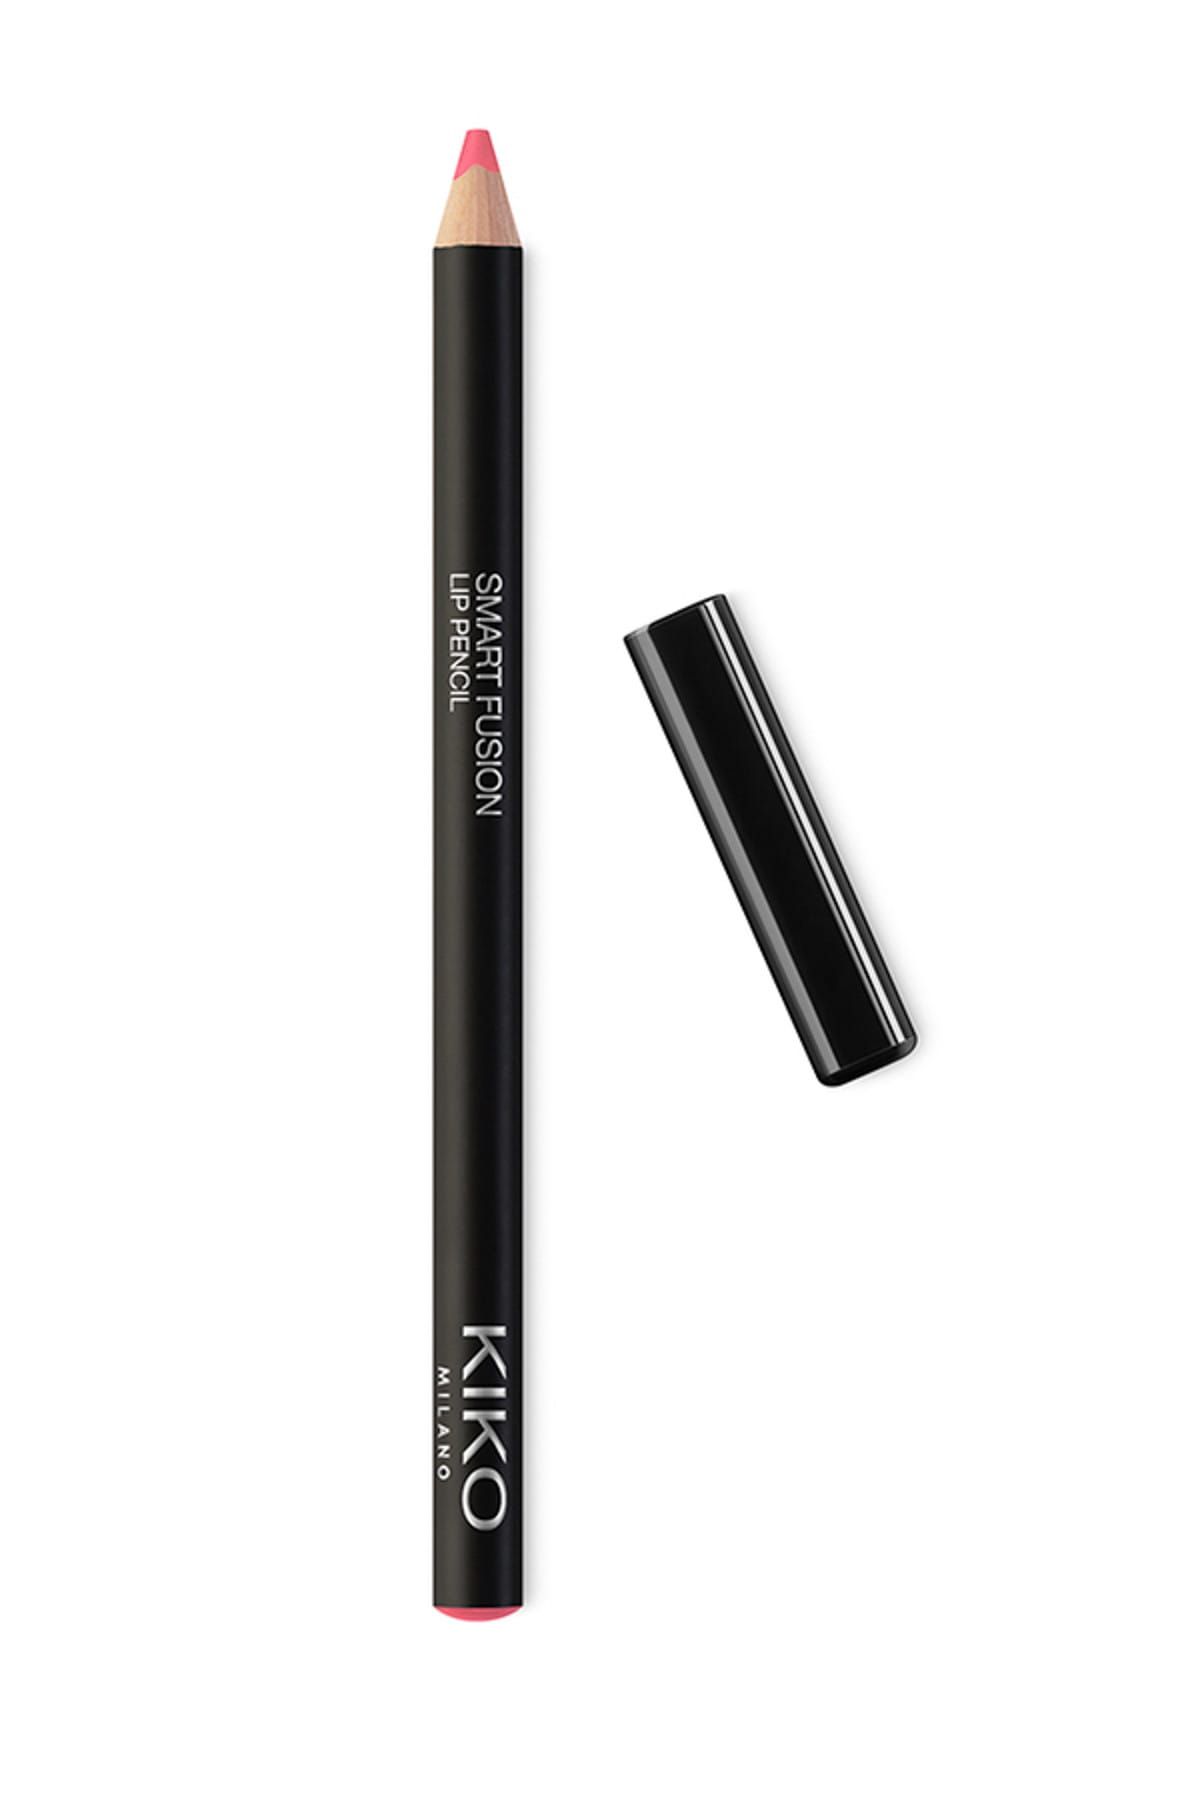 KIKO مداد لب Smart Fusion بافت نرم و روان شماره 508 رنگ رز نباتی